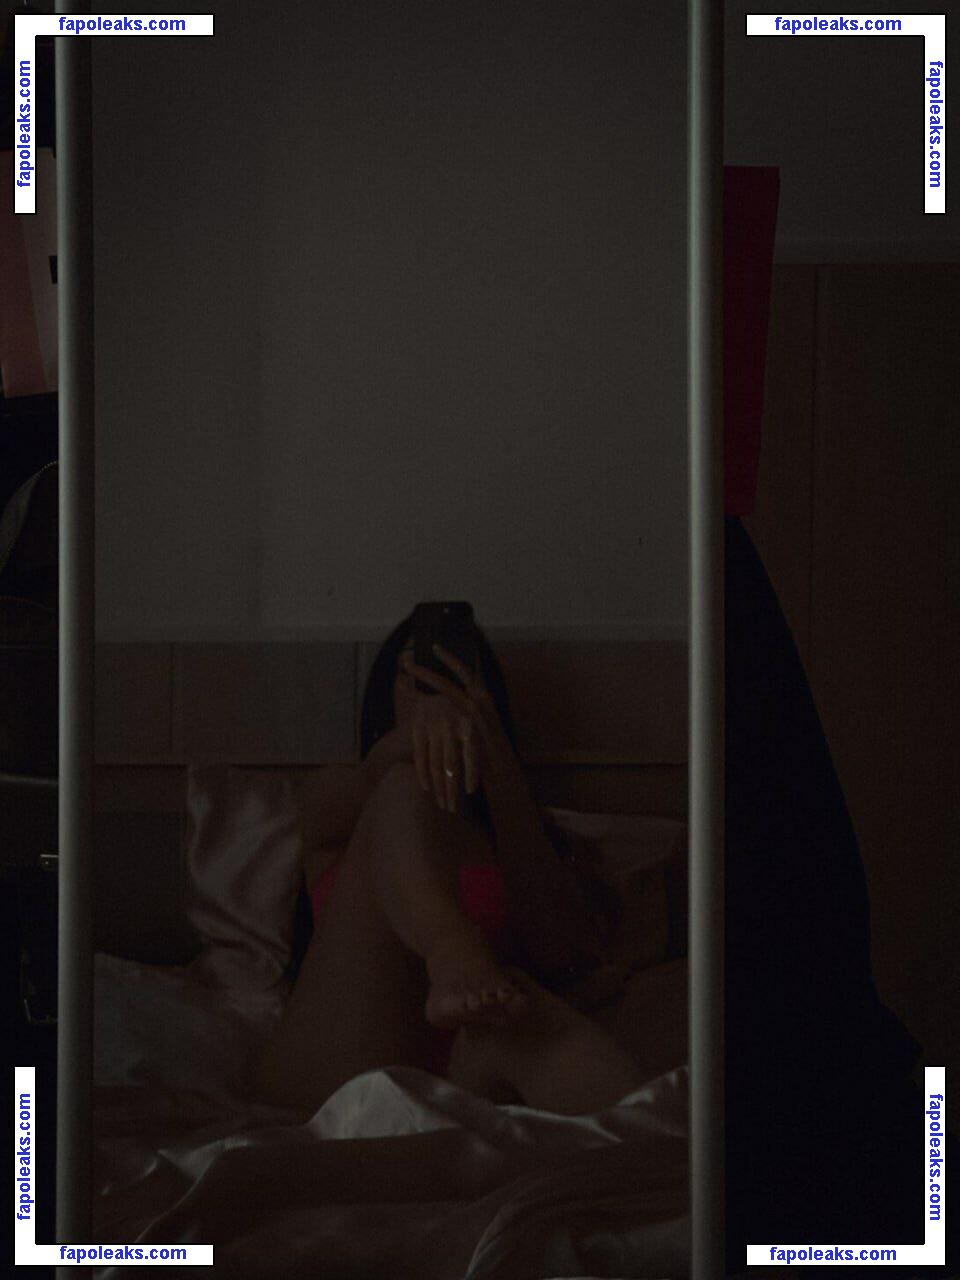 Anastasia Steklova / astklv nude photo #0251 from OnlyFans